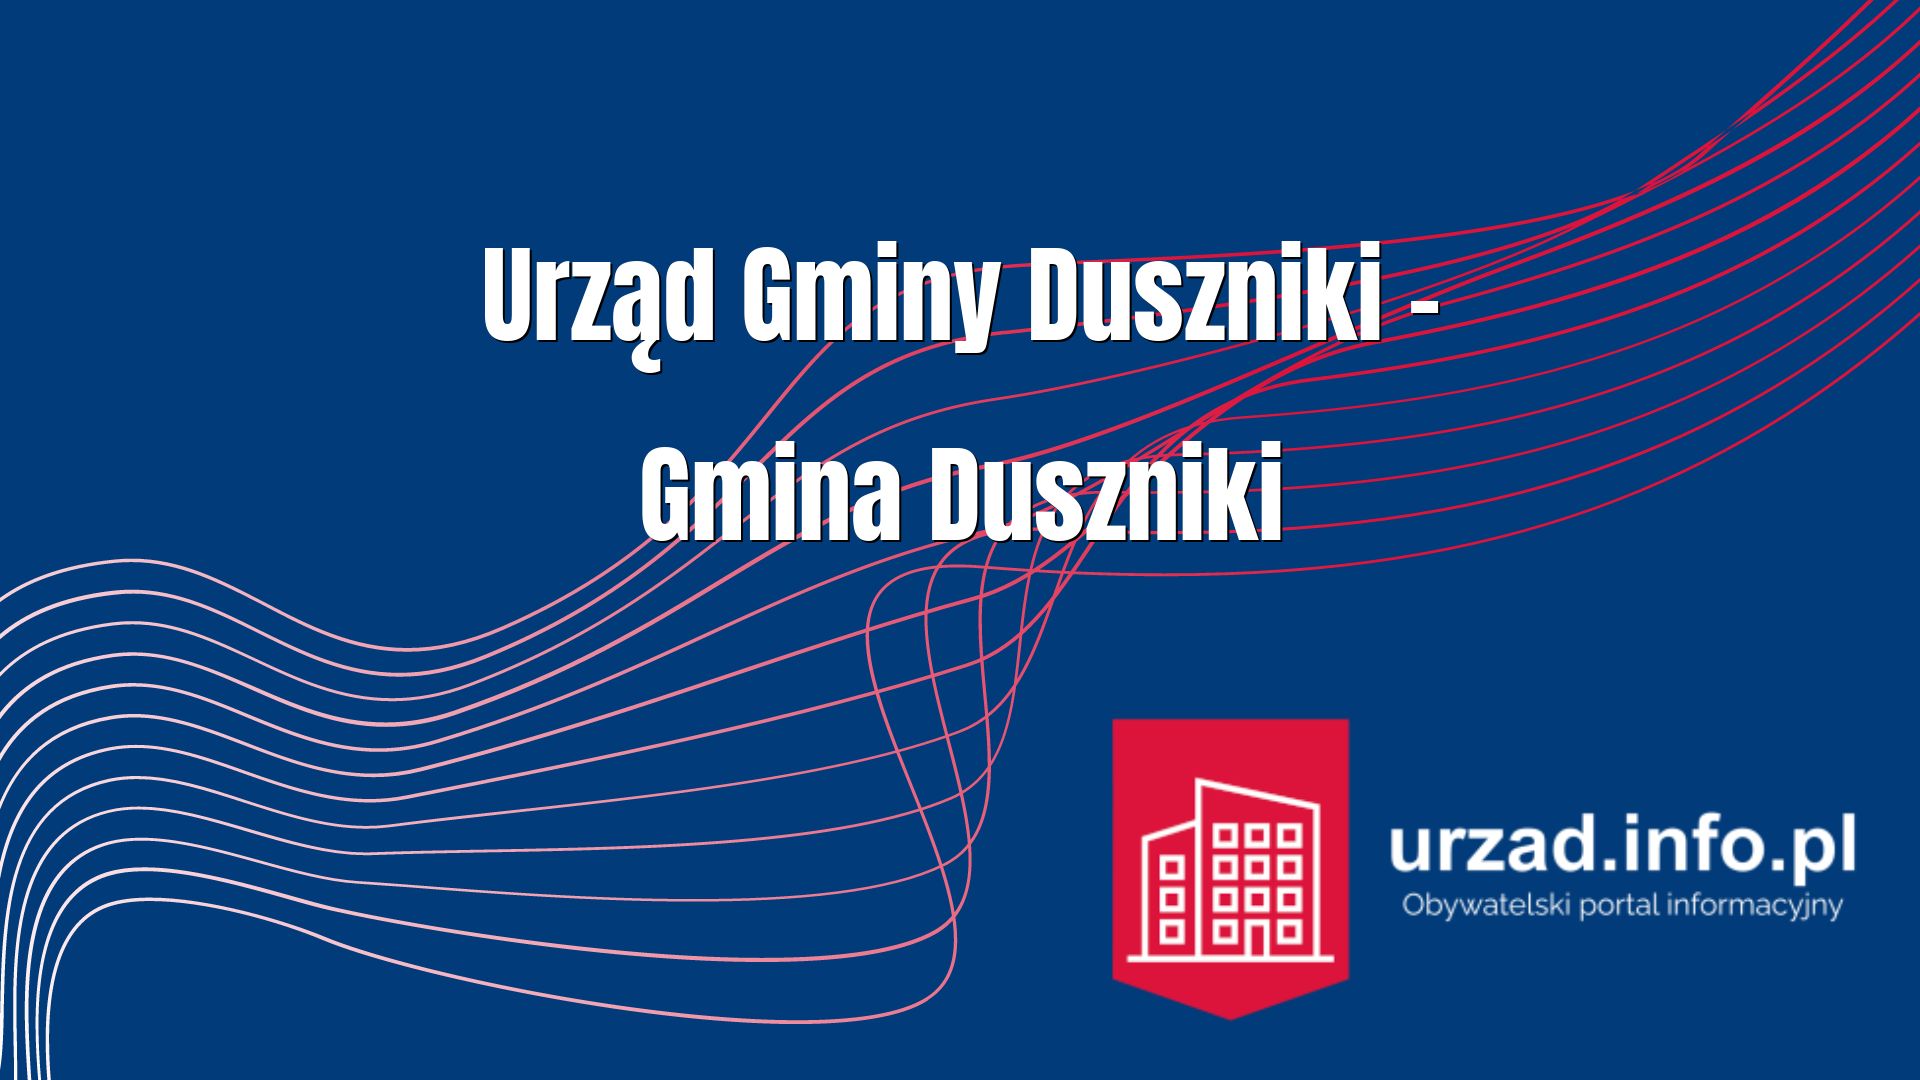 Urząd Gminy Duszniki – Gmina Duszniki